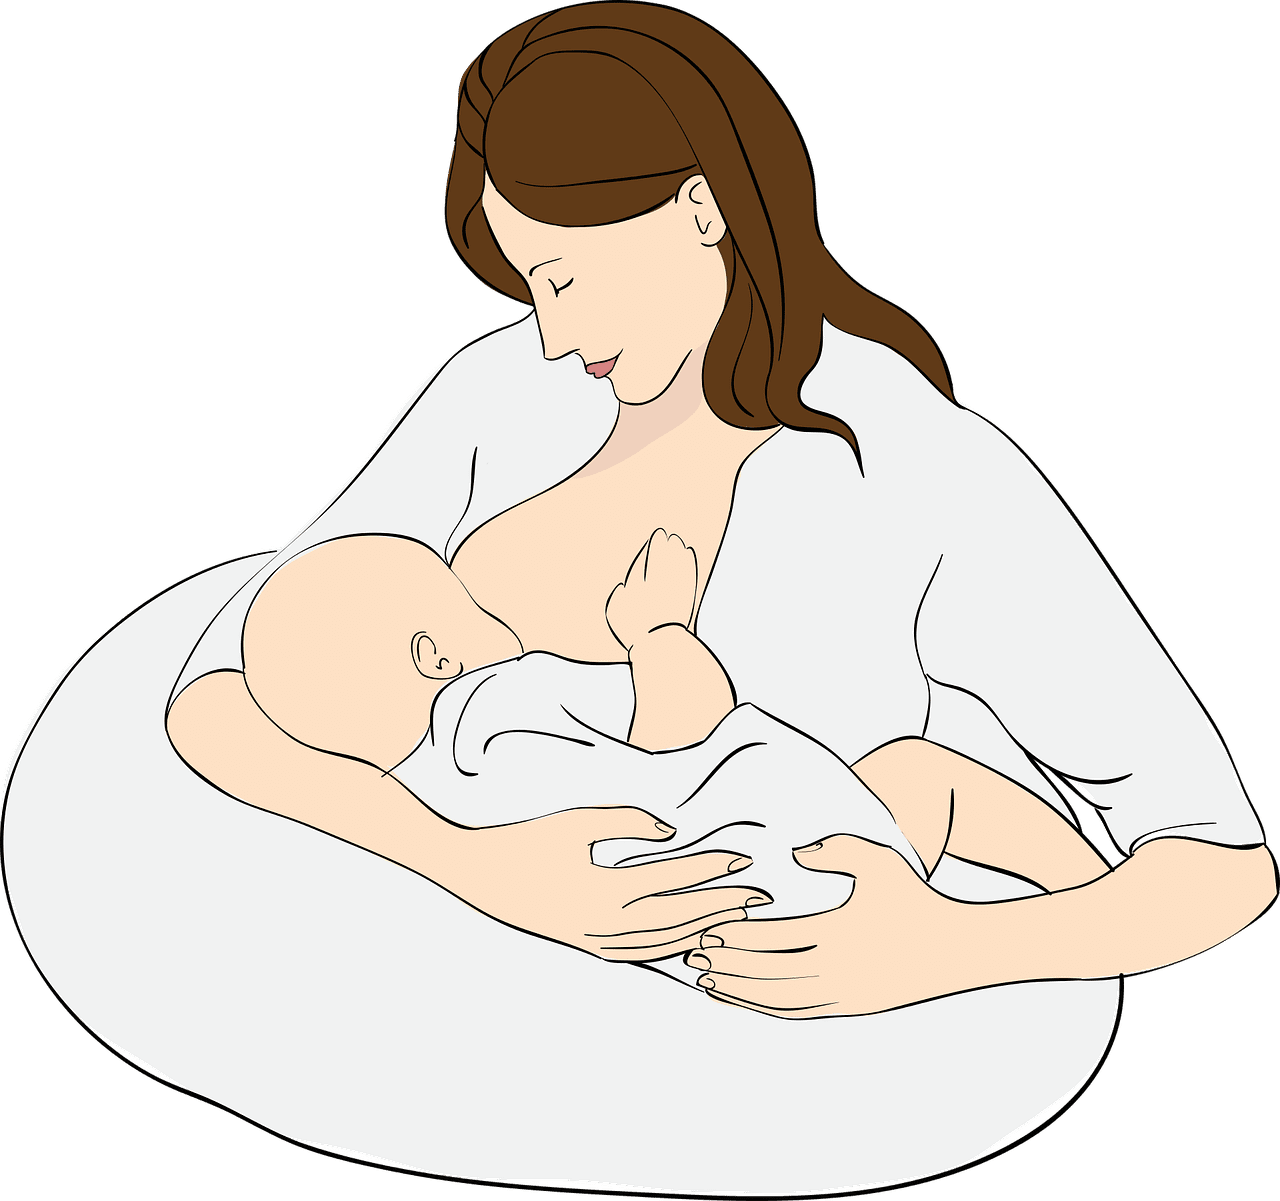 mom breast feeding baby